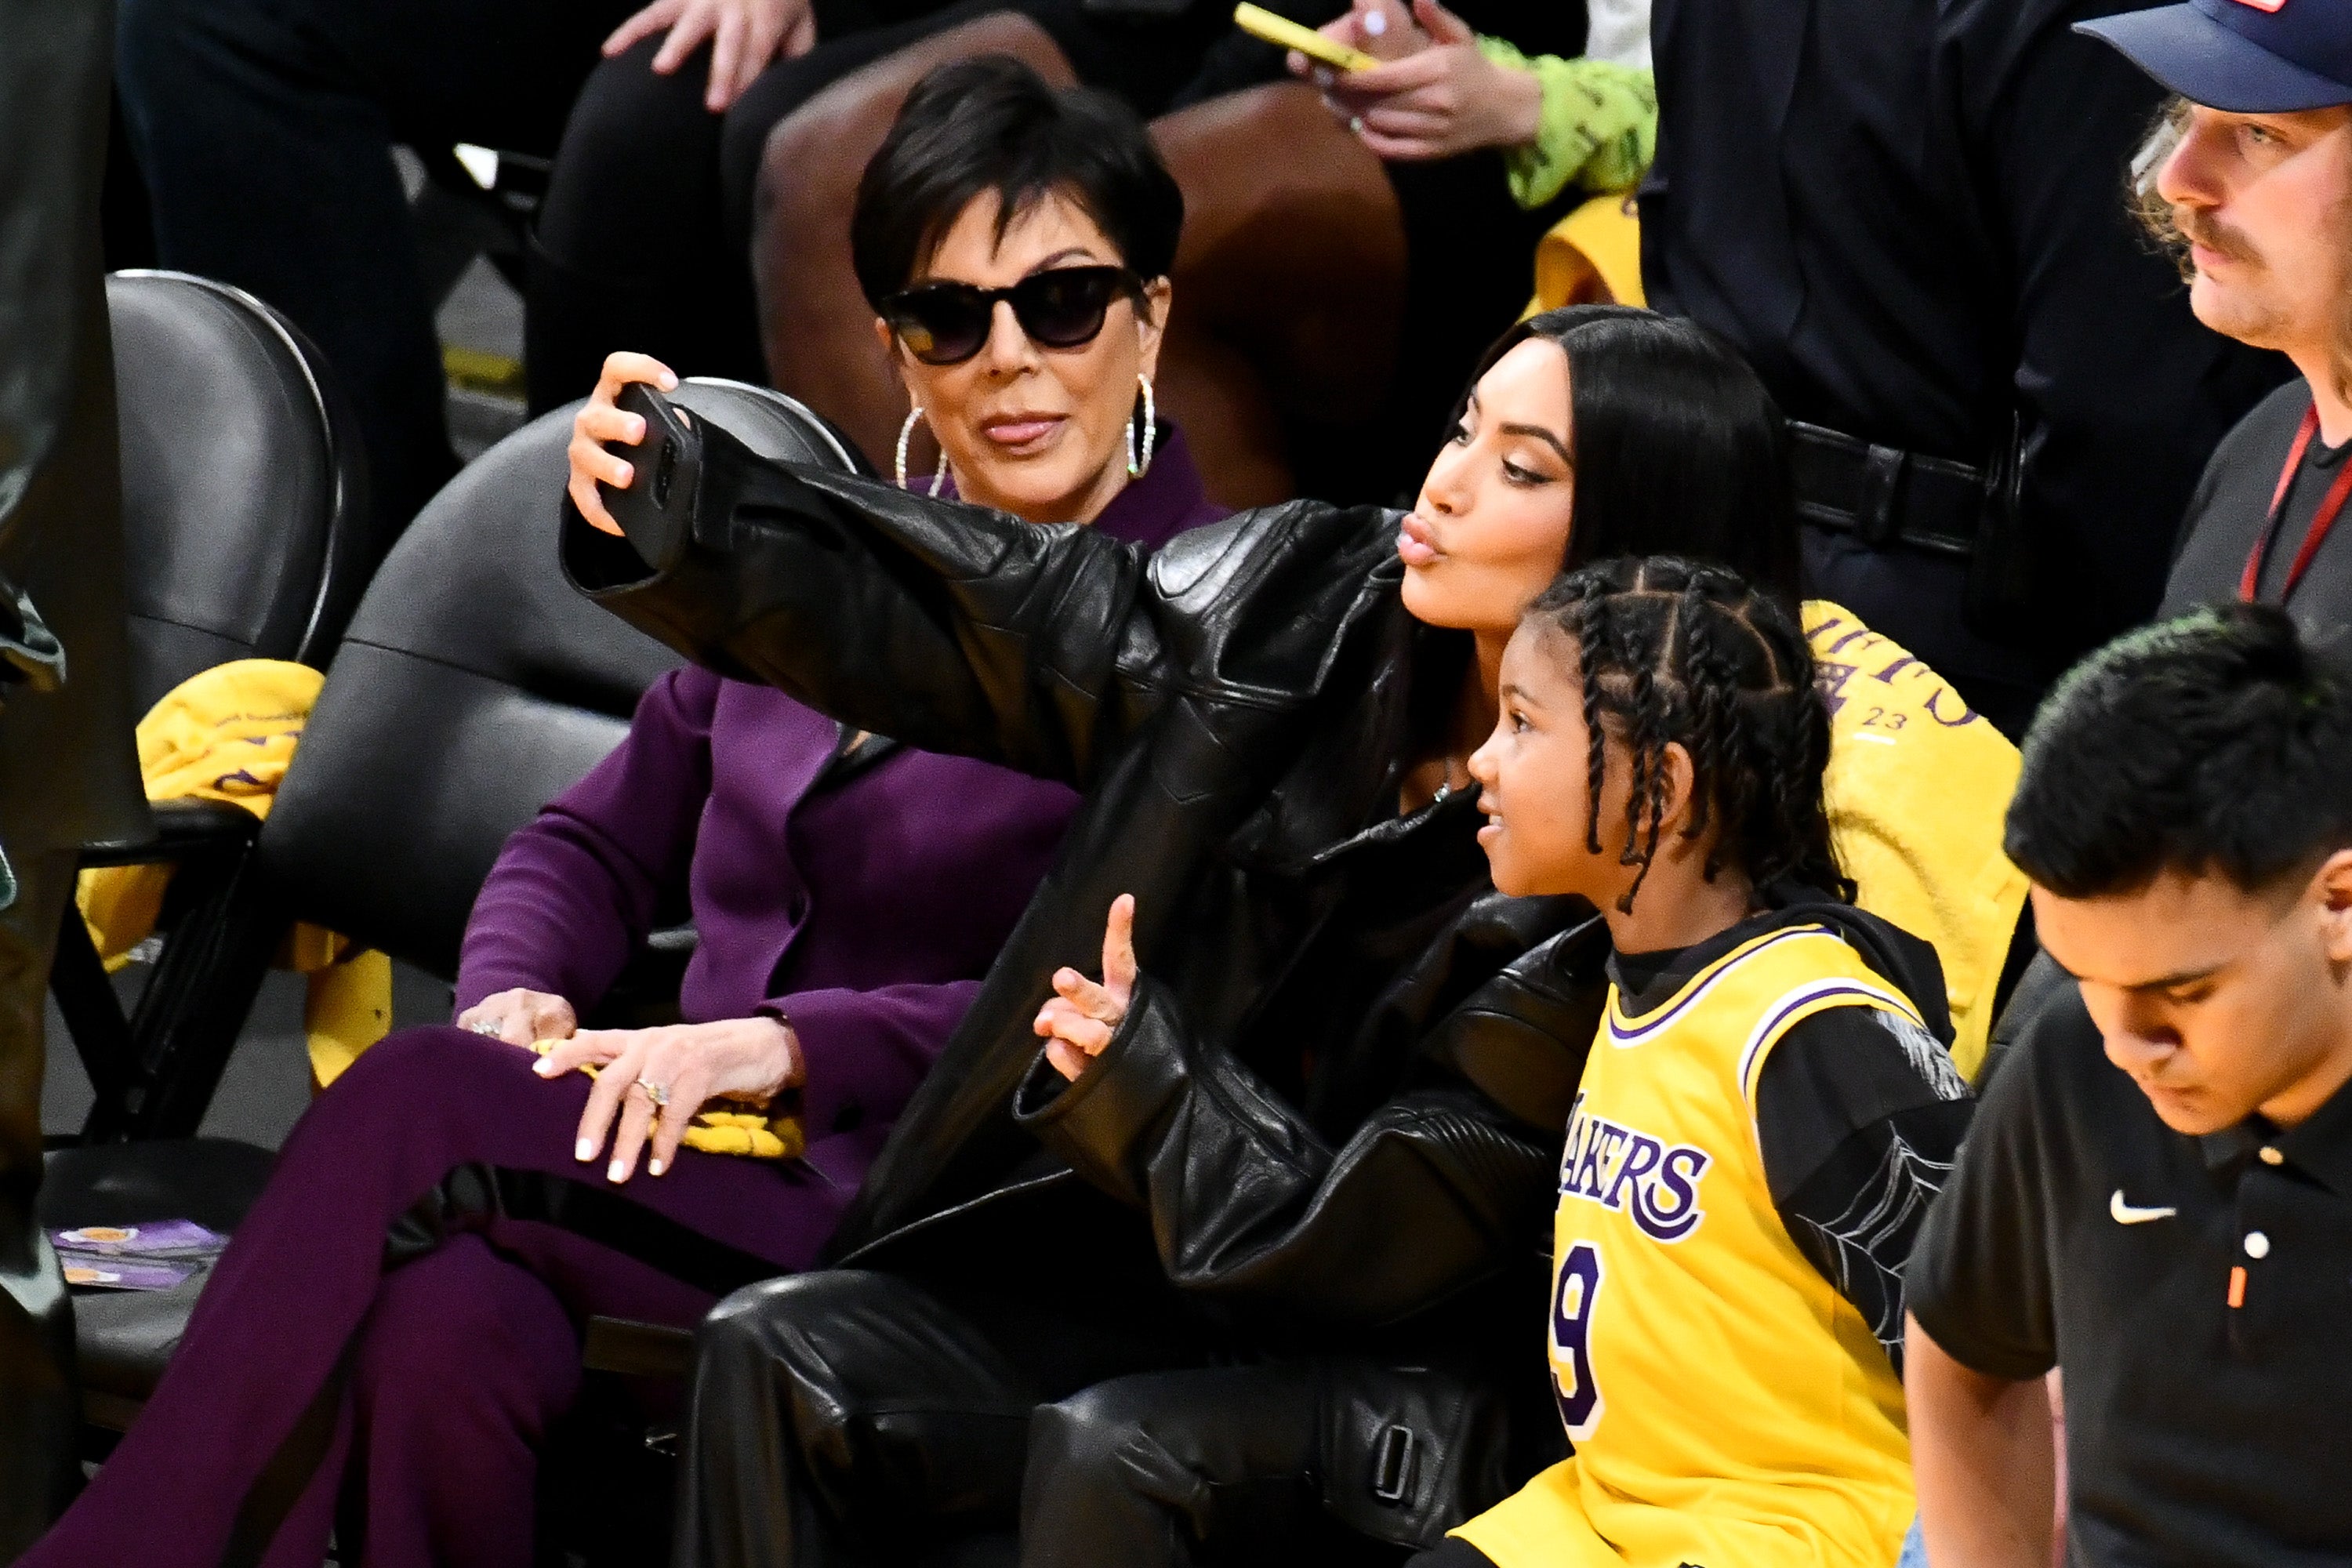 Kim Kardashian Wears Baggy Jeans to 2 Lakers Games